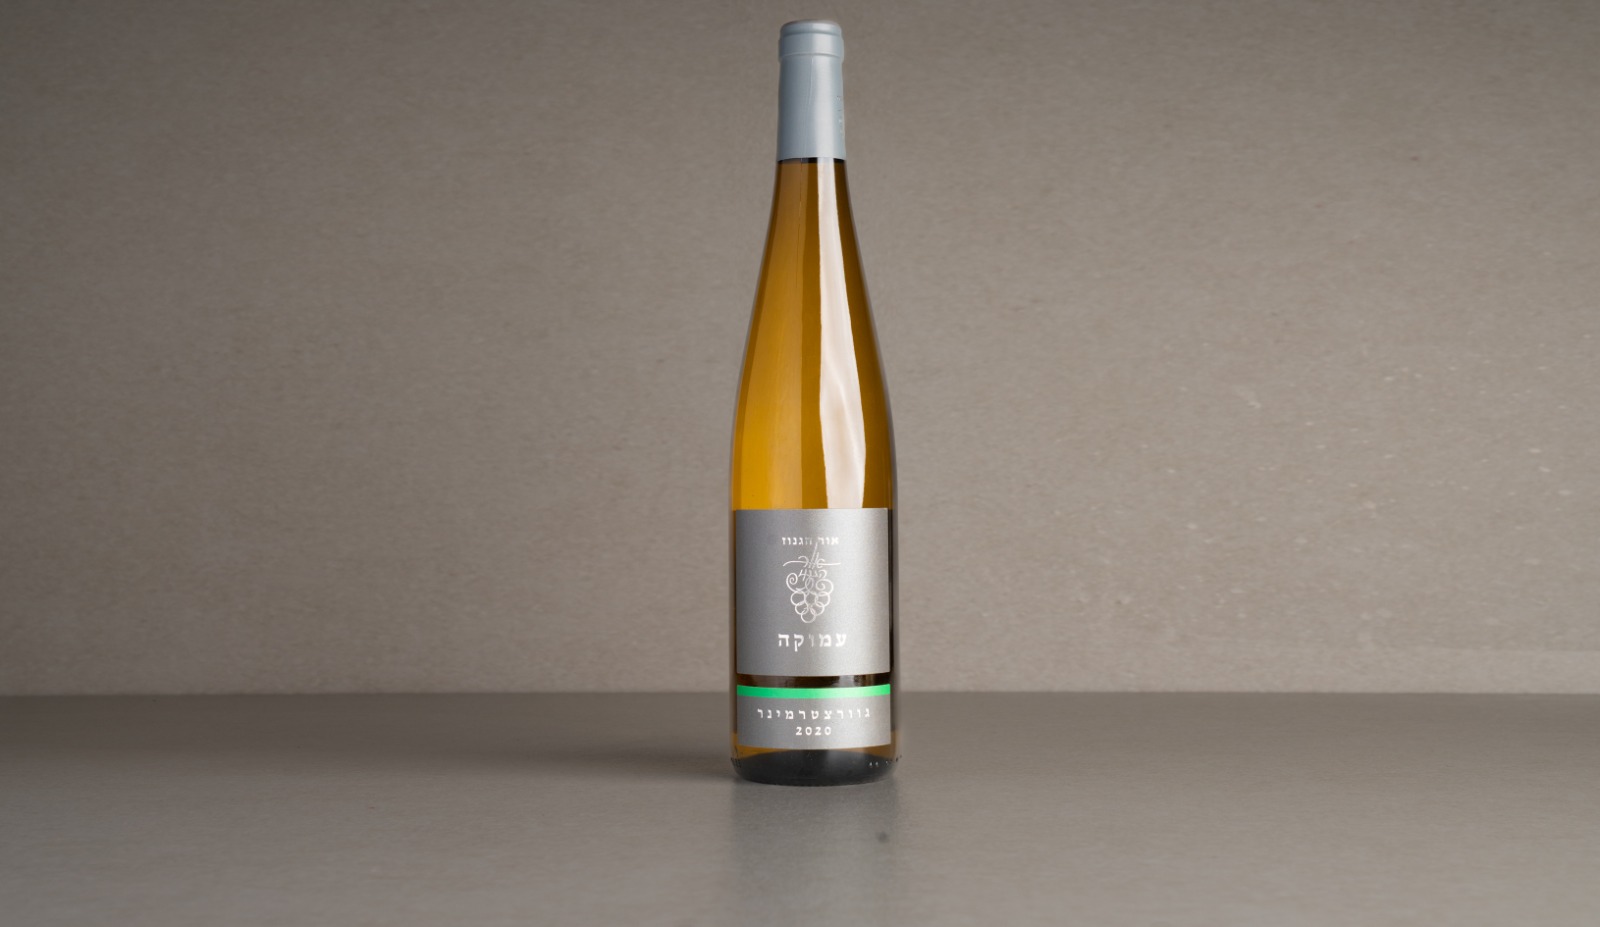 Semi-dry white wine "Or Haganuz" Amuka Gewurztraminer 2020